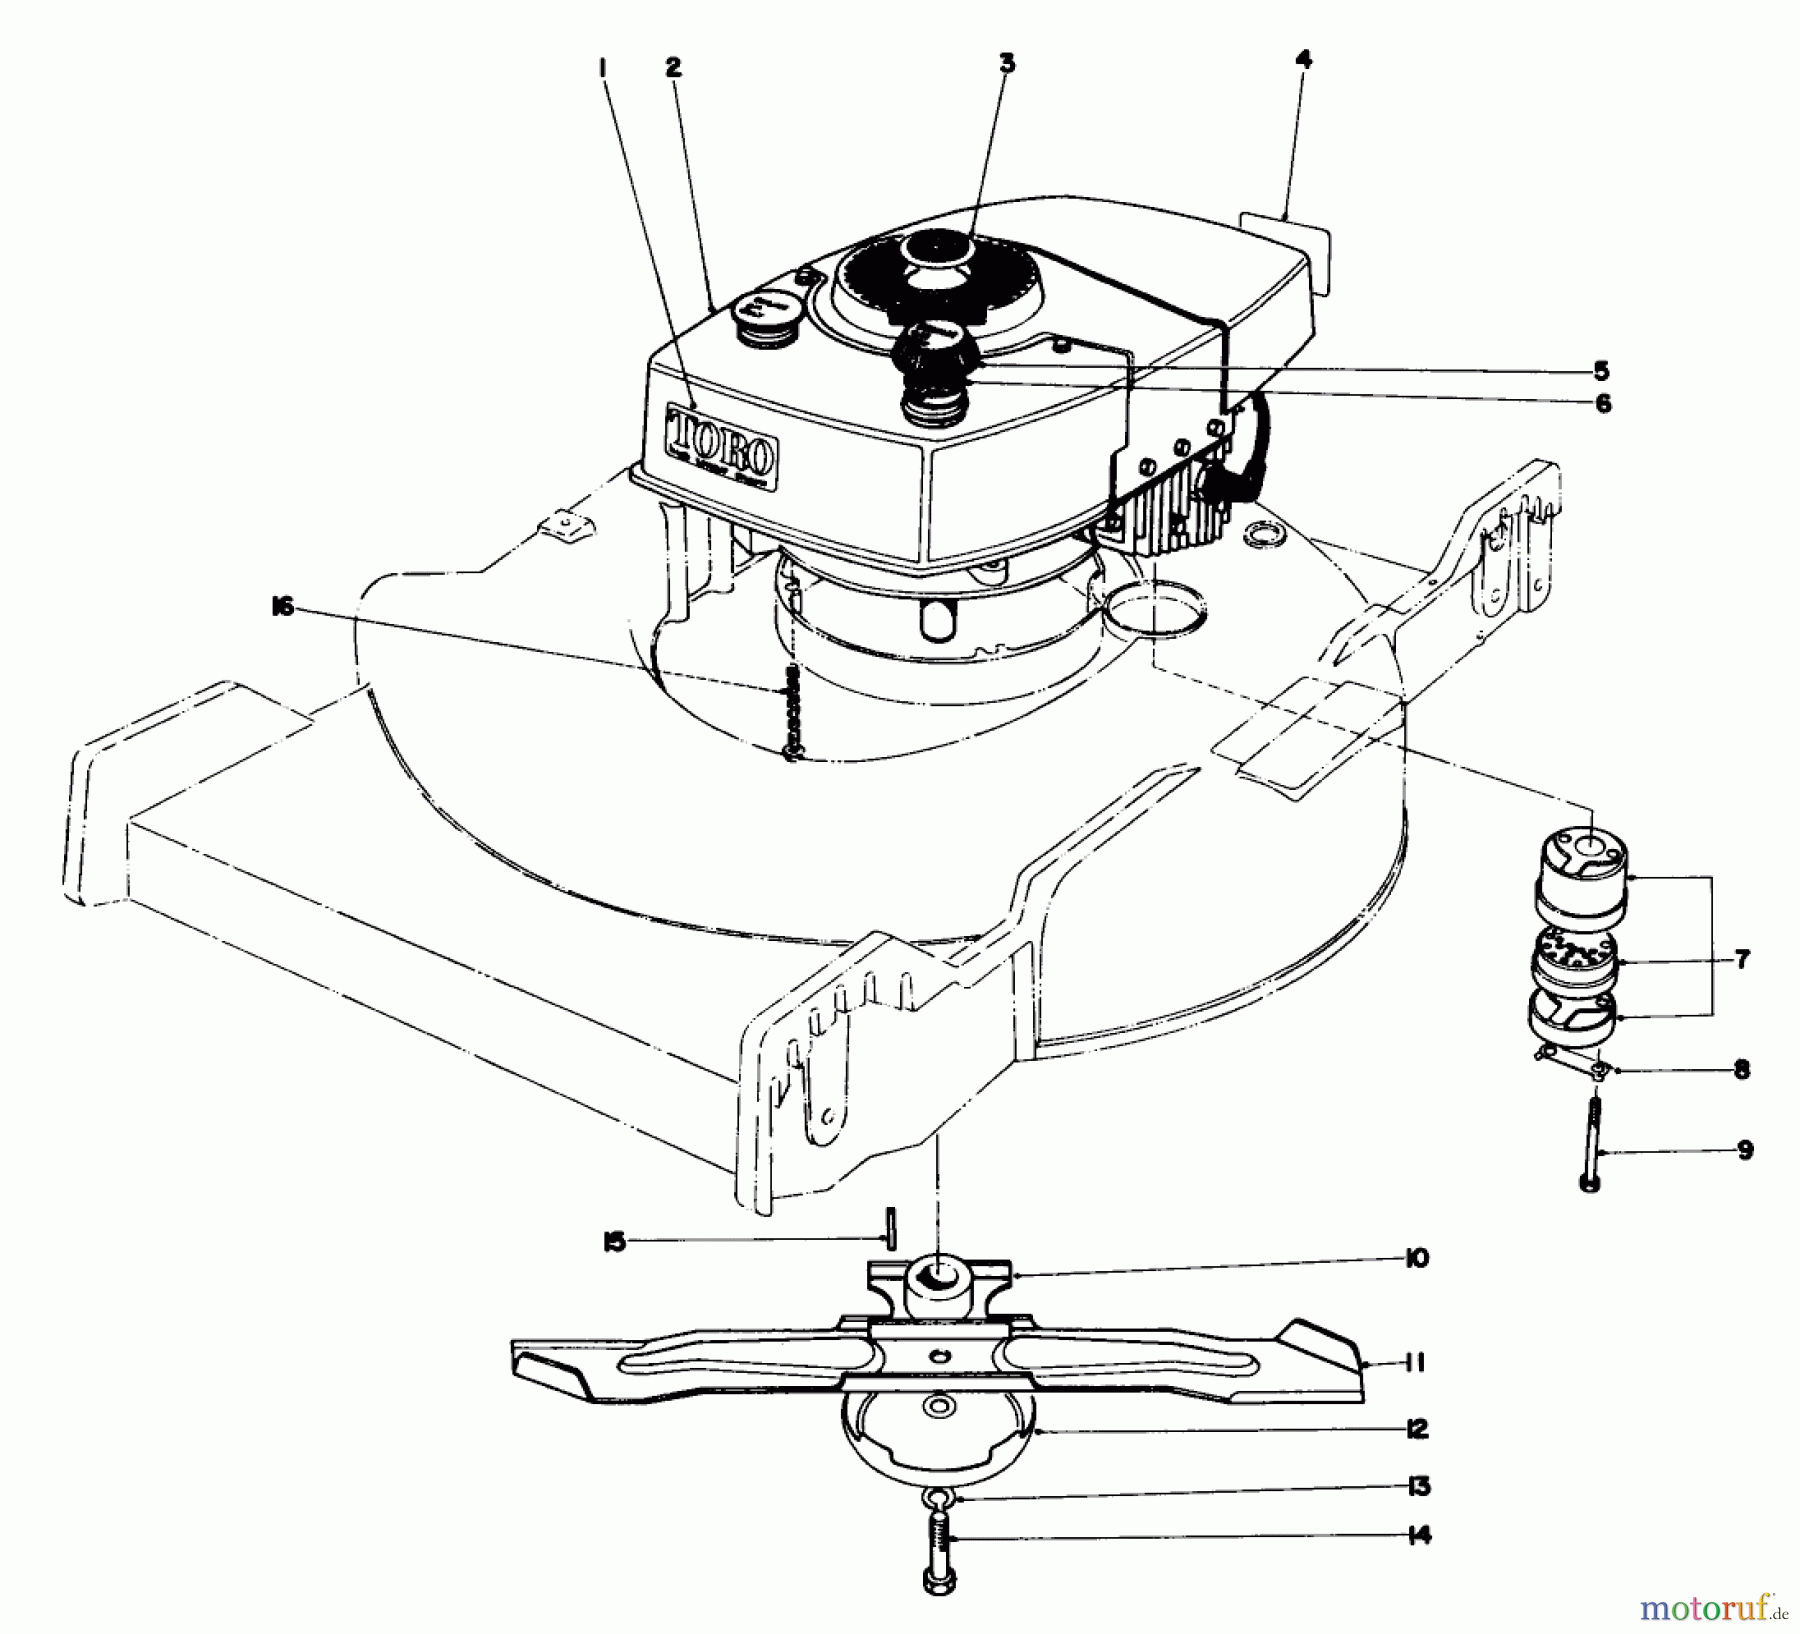  Toro Neu Mowers, Walk-Behind Seite 1 20660 - Toro Lawnmower, 1974 (4000001-4999999) ENGINE ASSEMBLY MODEL NO. 20440